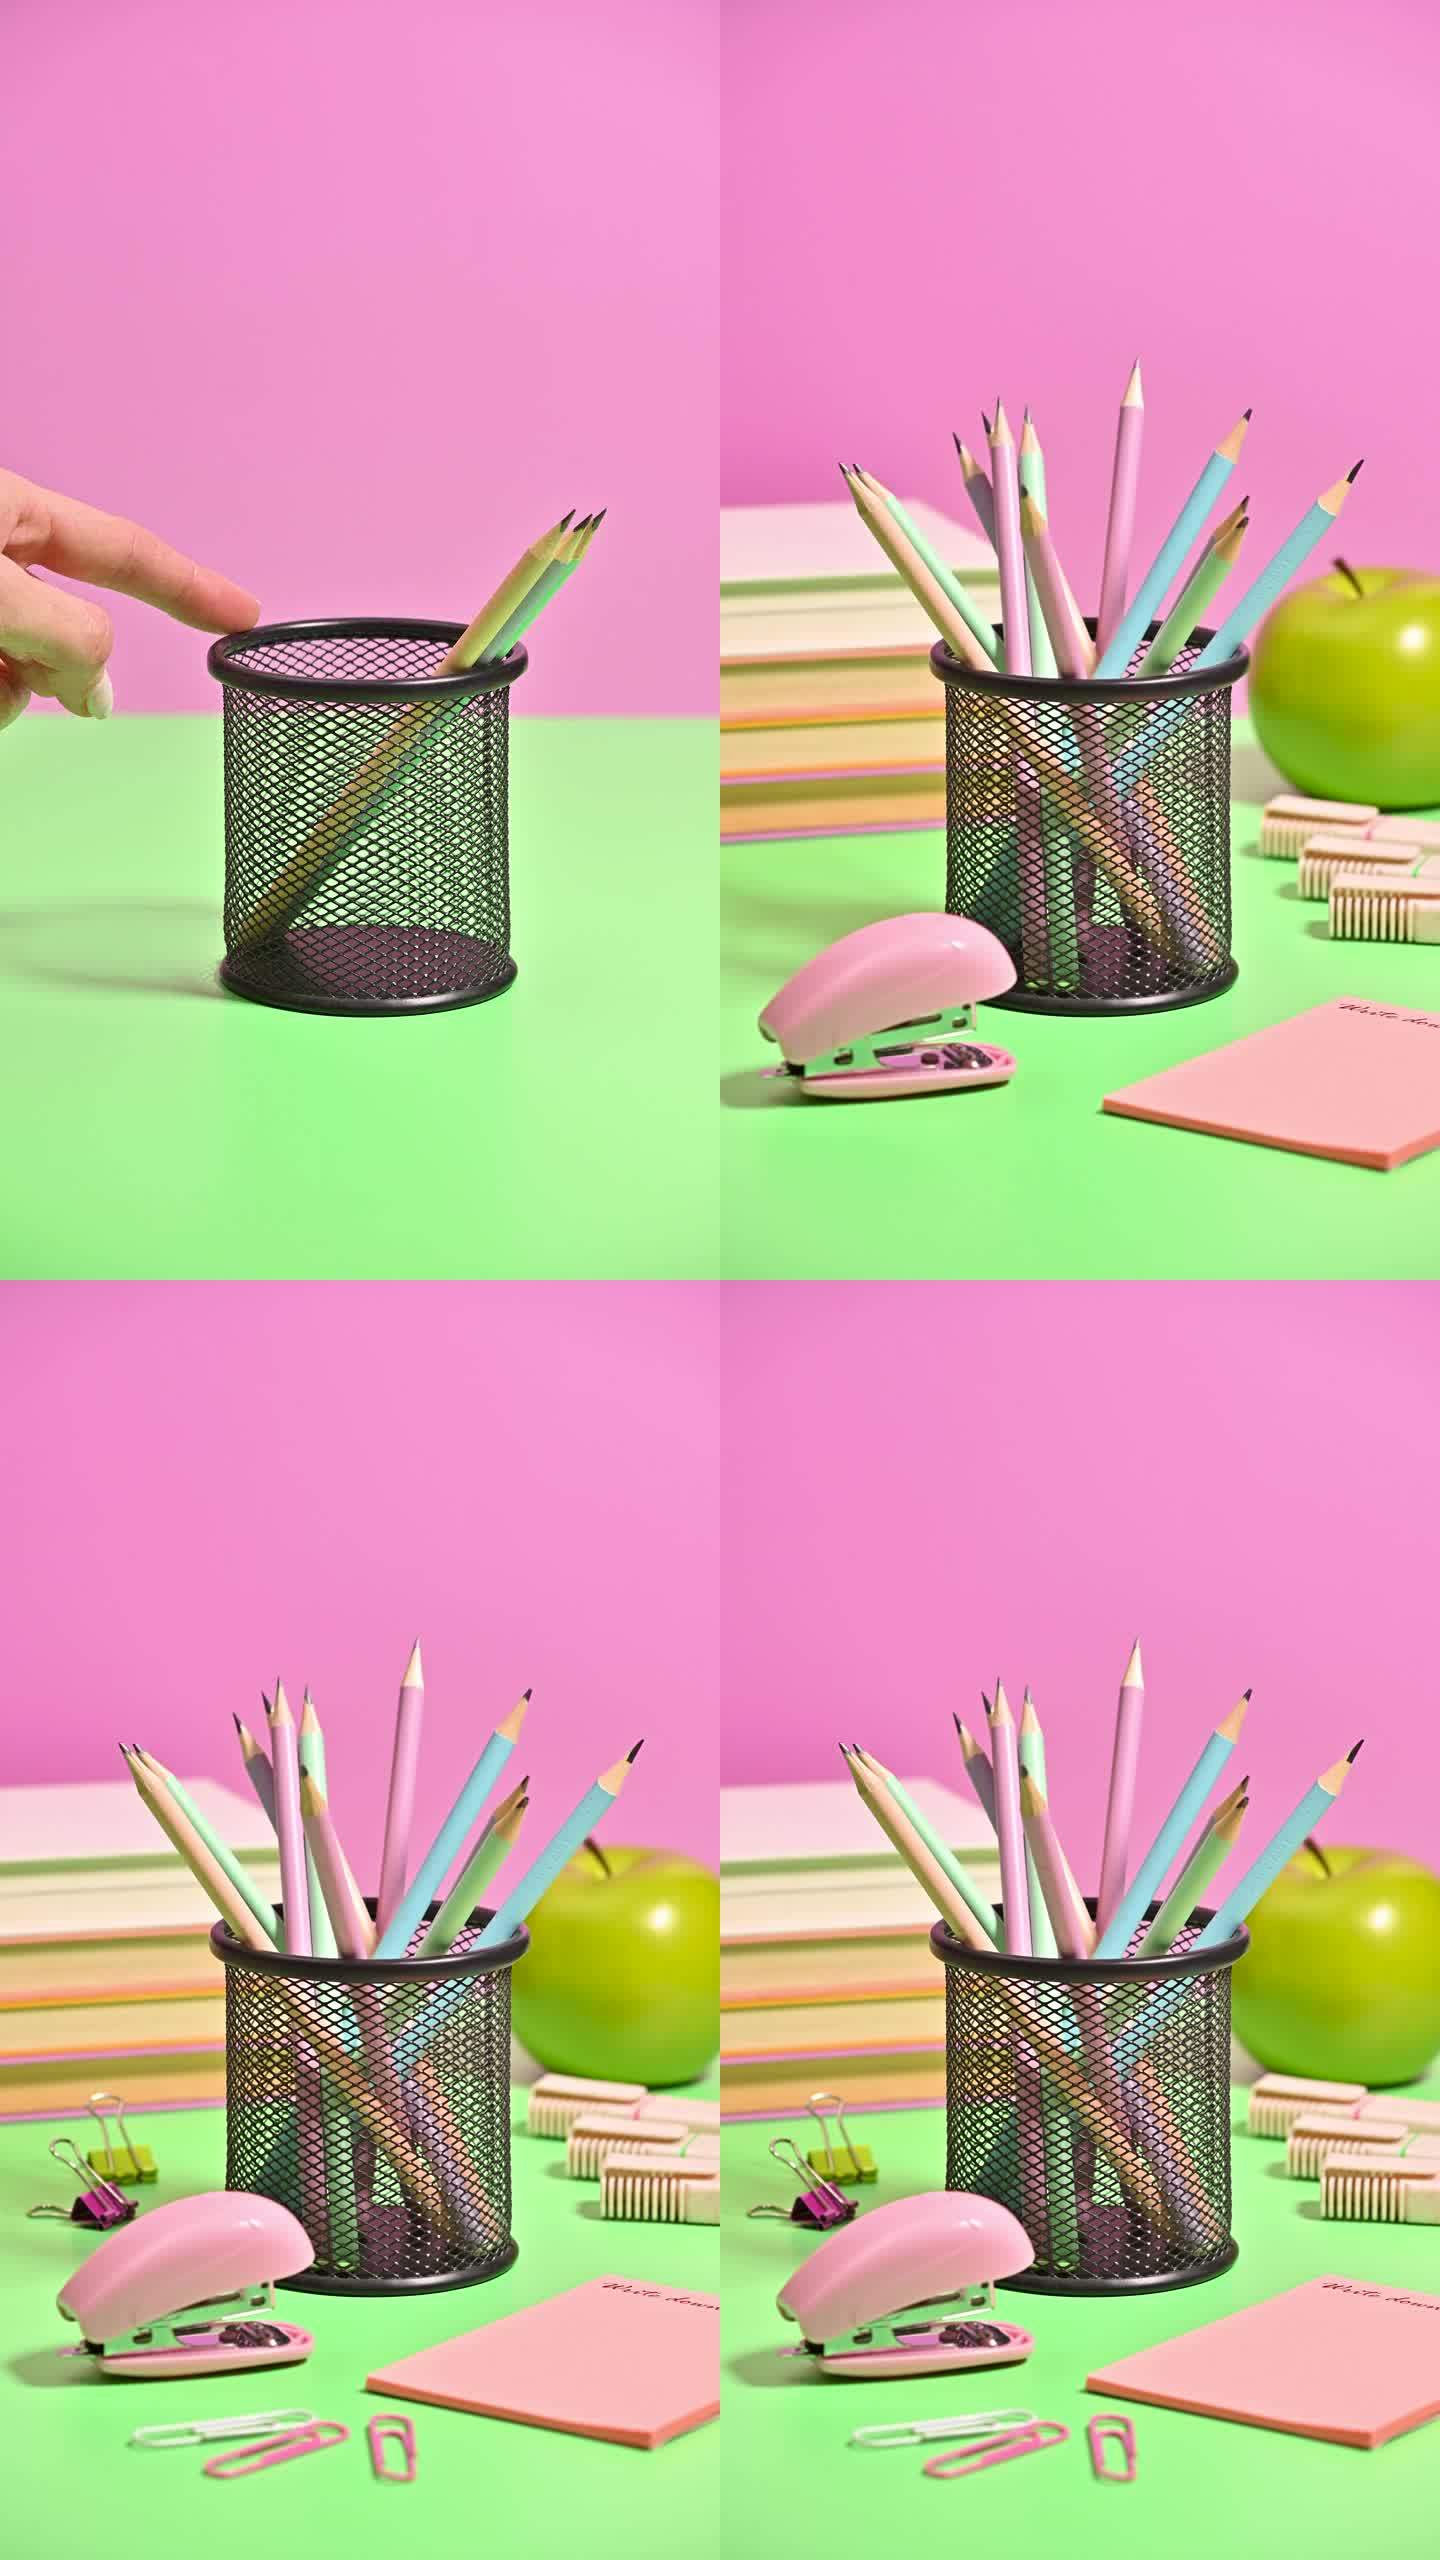 桌上出现的学校文具的粉彩灵感垂直停止运动